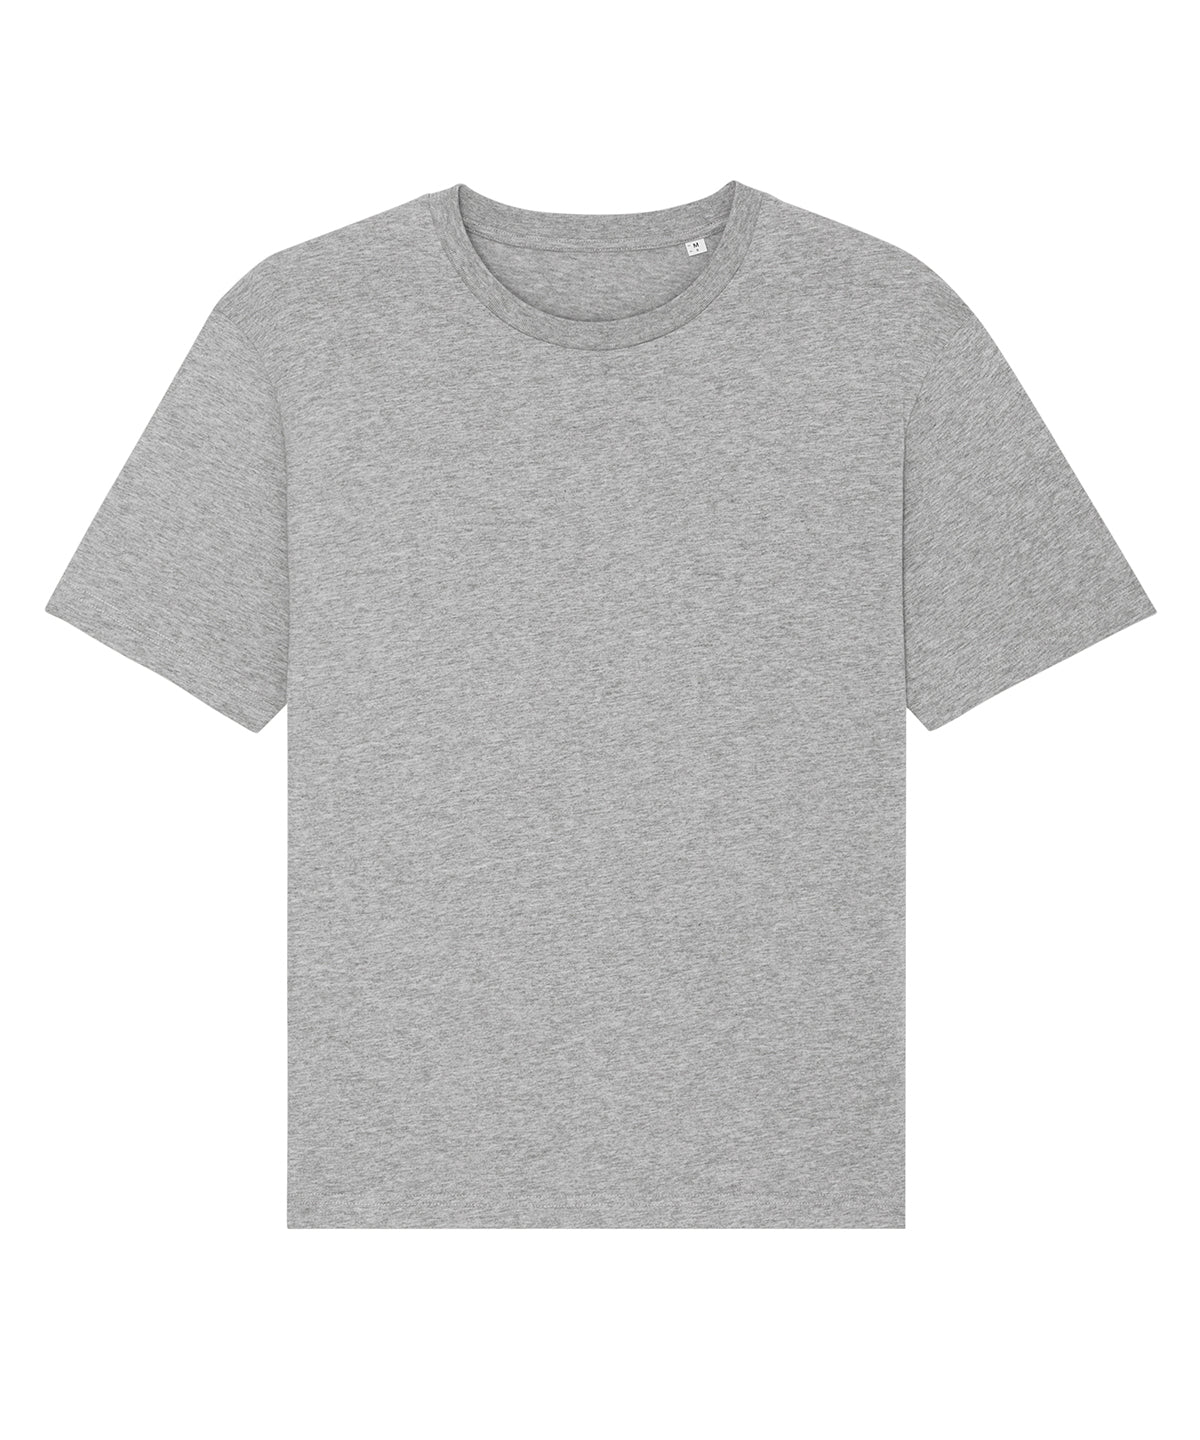 Fuser unisex relaxed t-shirt (STTU759)